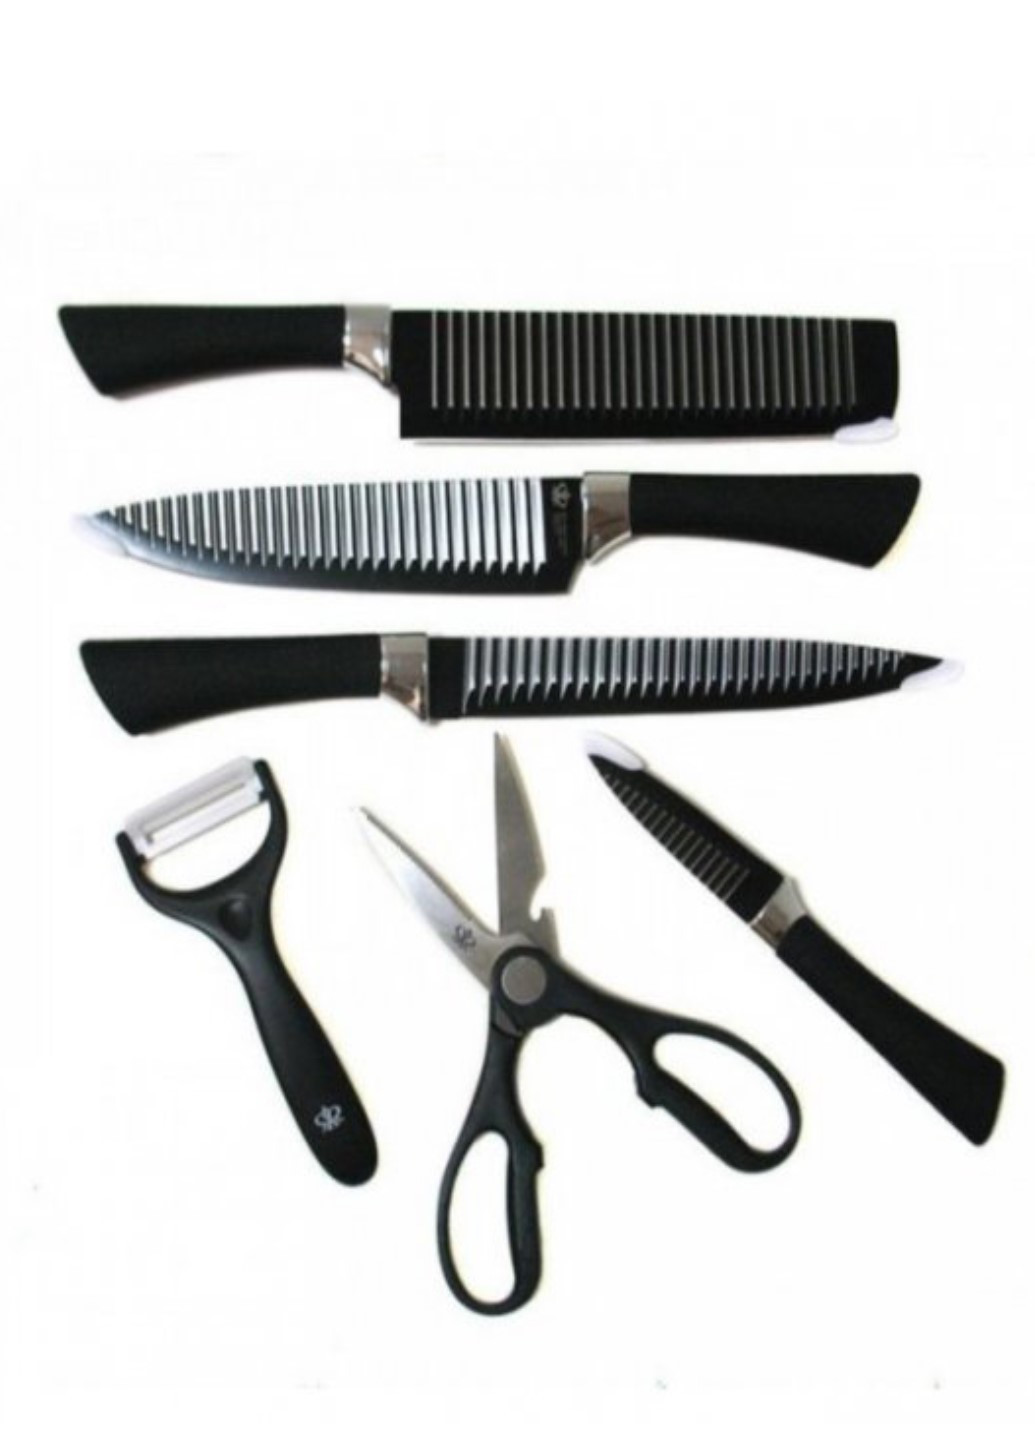 Набір кухонних ножів із сталі 6 предметів King-B0011 Genuine чорний, пластик, нержавіюча сталь